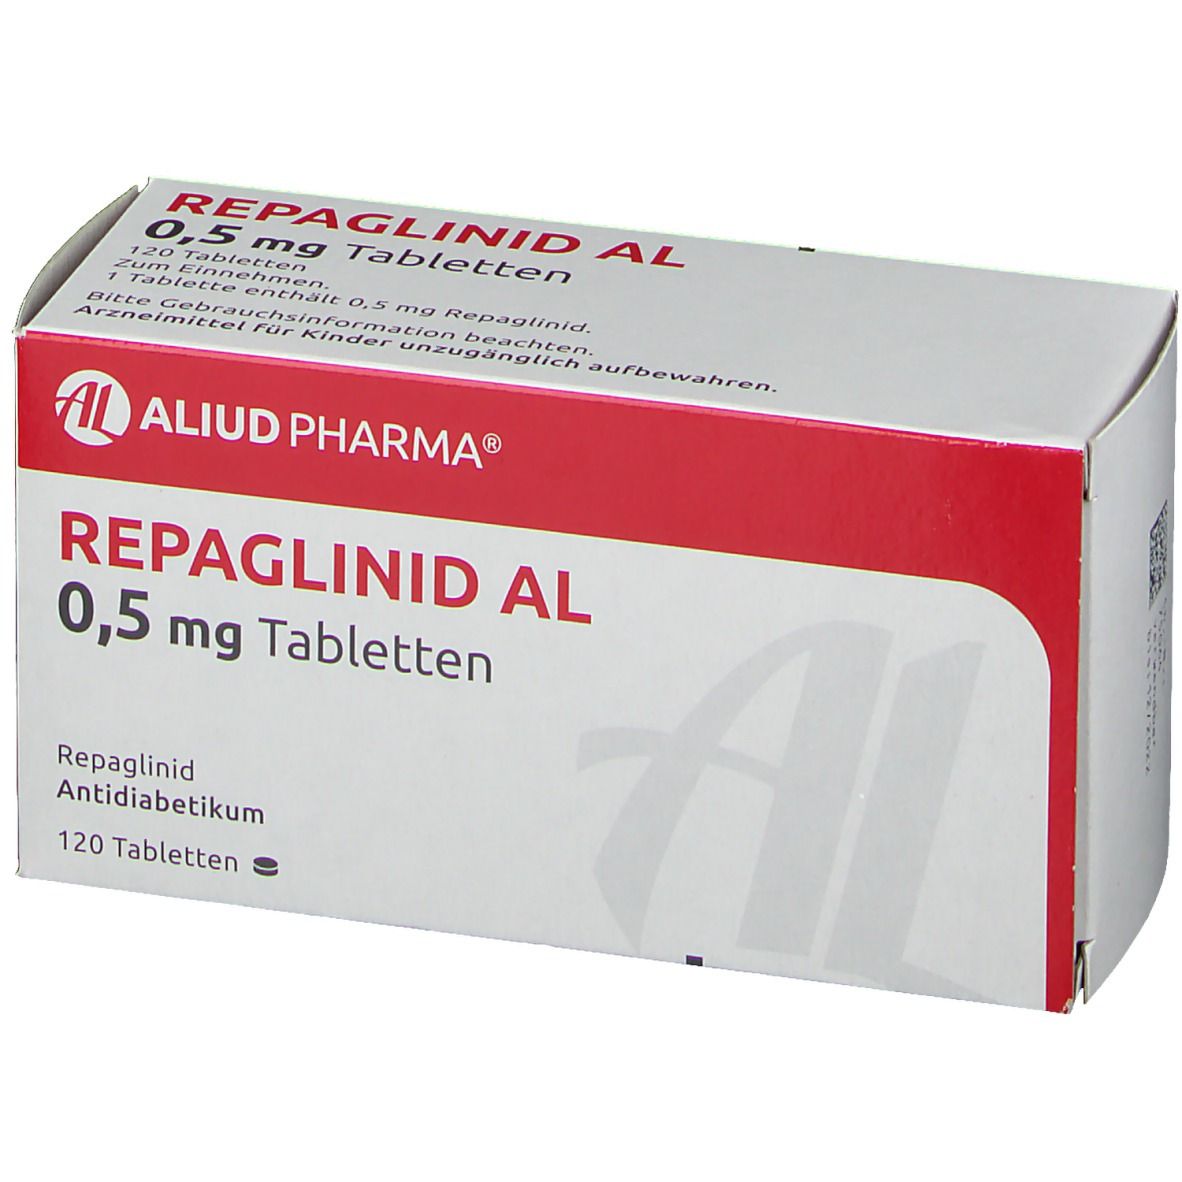 Repaglinid AL 0,5 mg